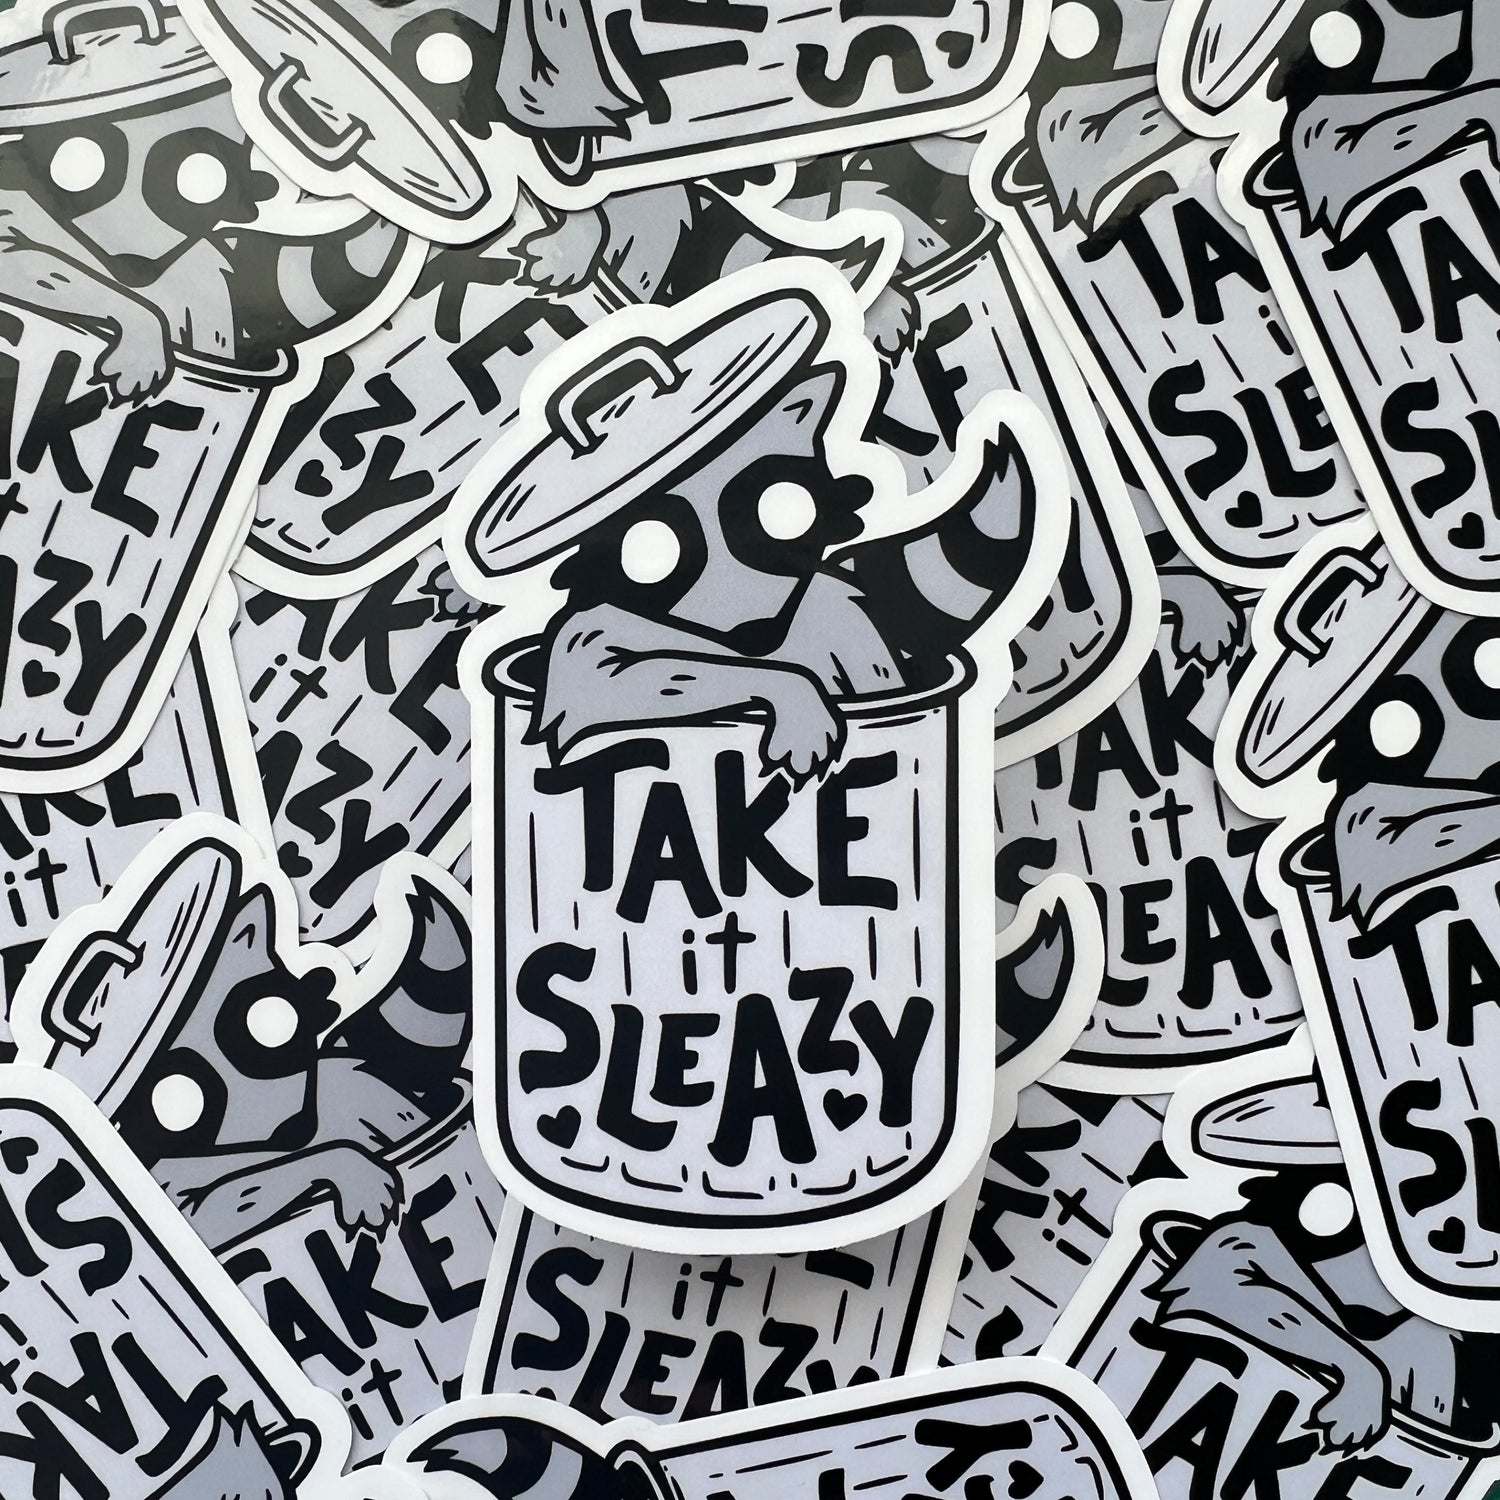 Take It Sleazy Raccoon Sticker